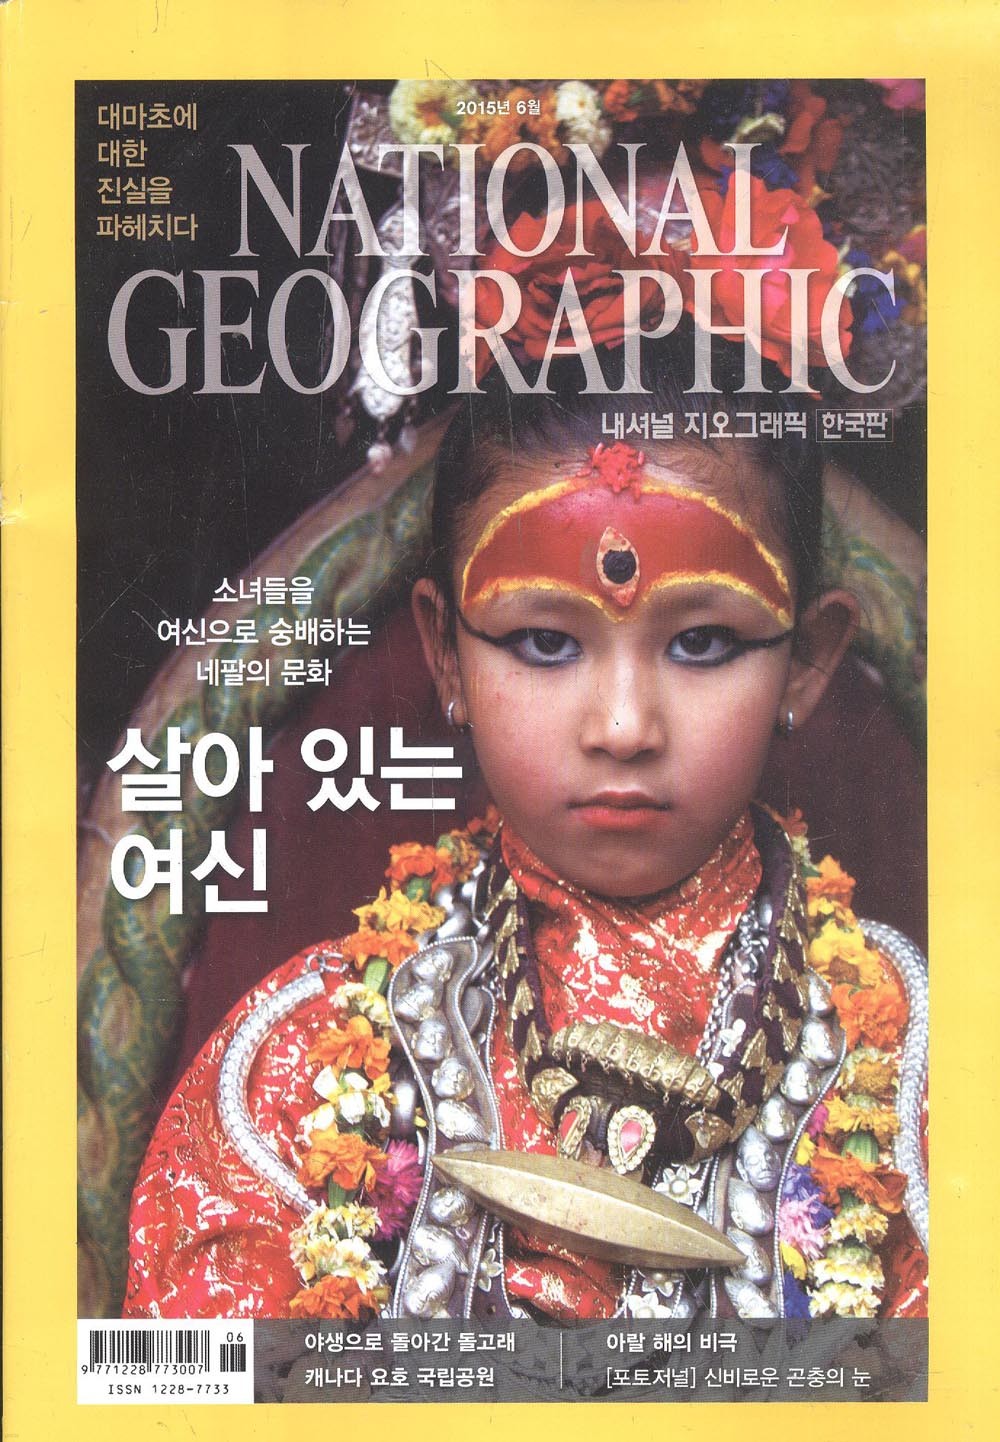 내셔널 지오그래픽 National Geographic 한국판 2015 06